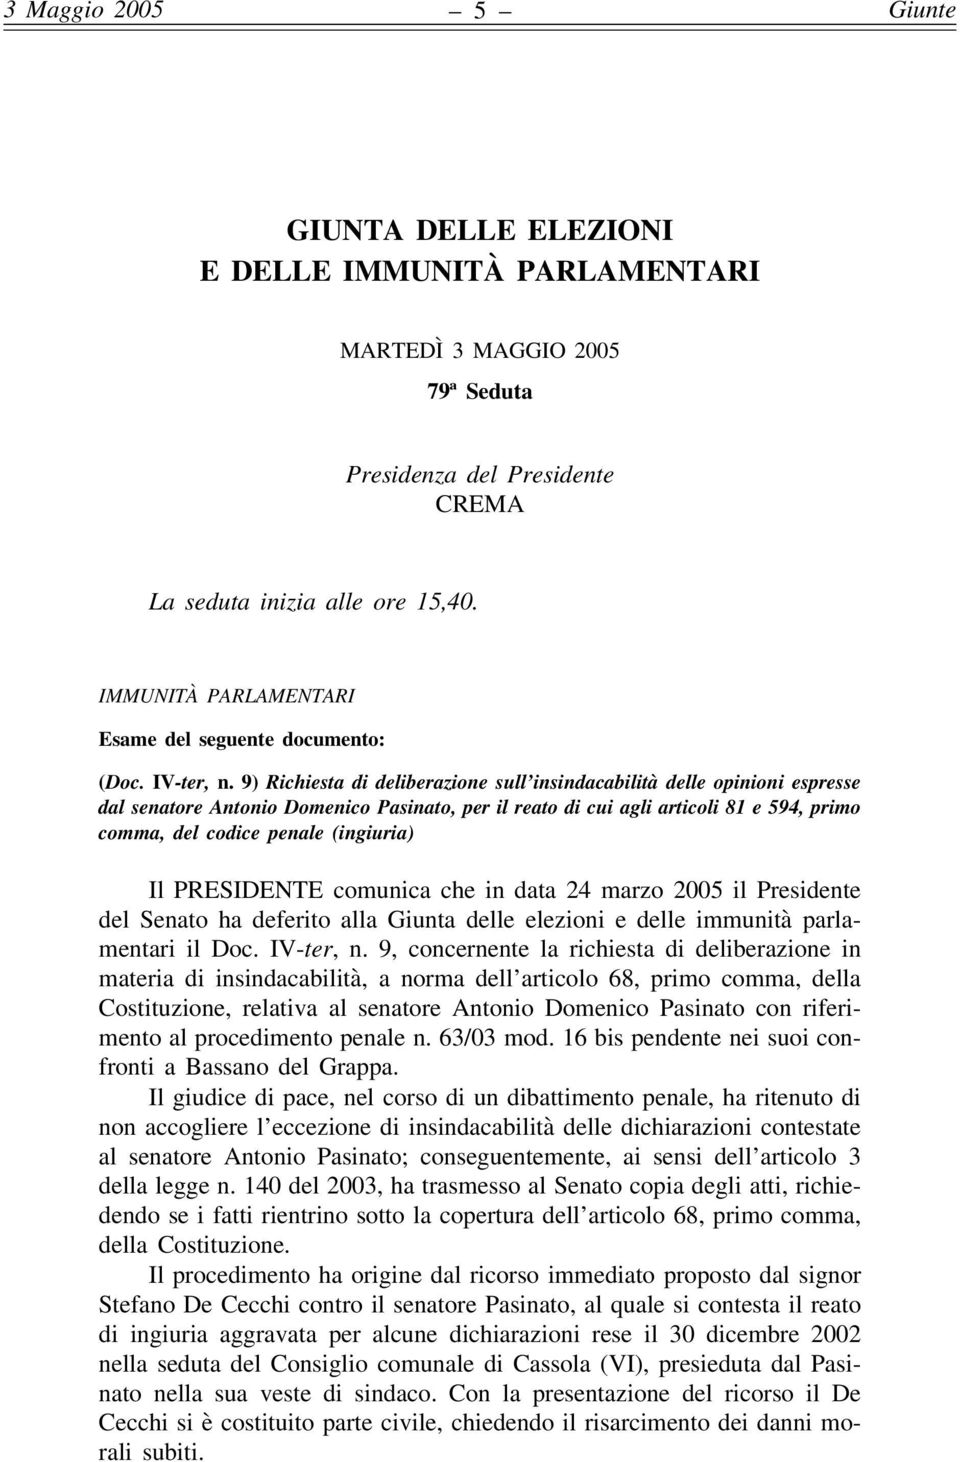 9) Richiesta di deliberazione sull insindacabilità delle opinioni espresse dal senatore Antonio Domenico Pasinato, per il reato di cui agli articoli 81 e 594, primo comma, del codice penale